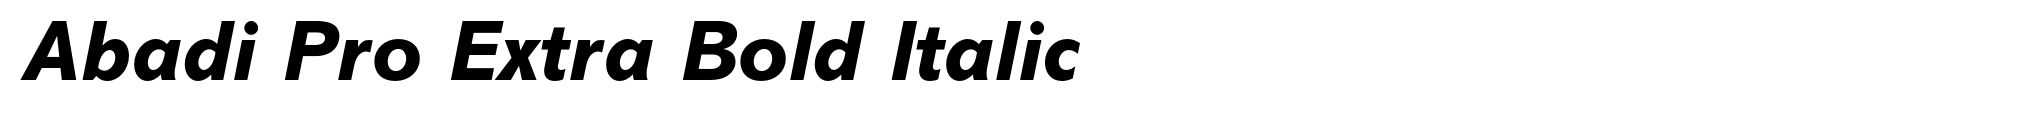 Abadi Pro Extra Bold Italic image